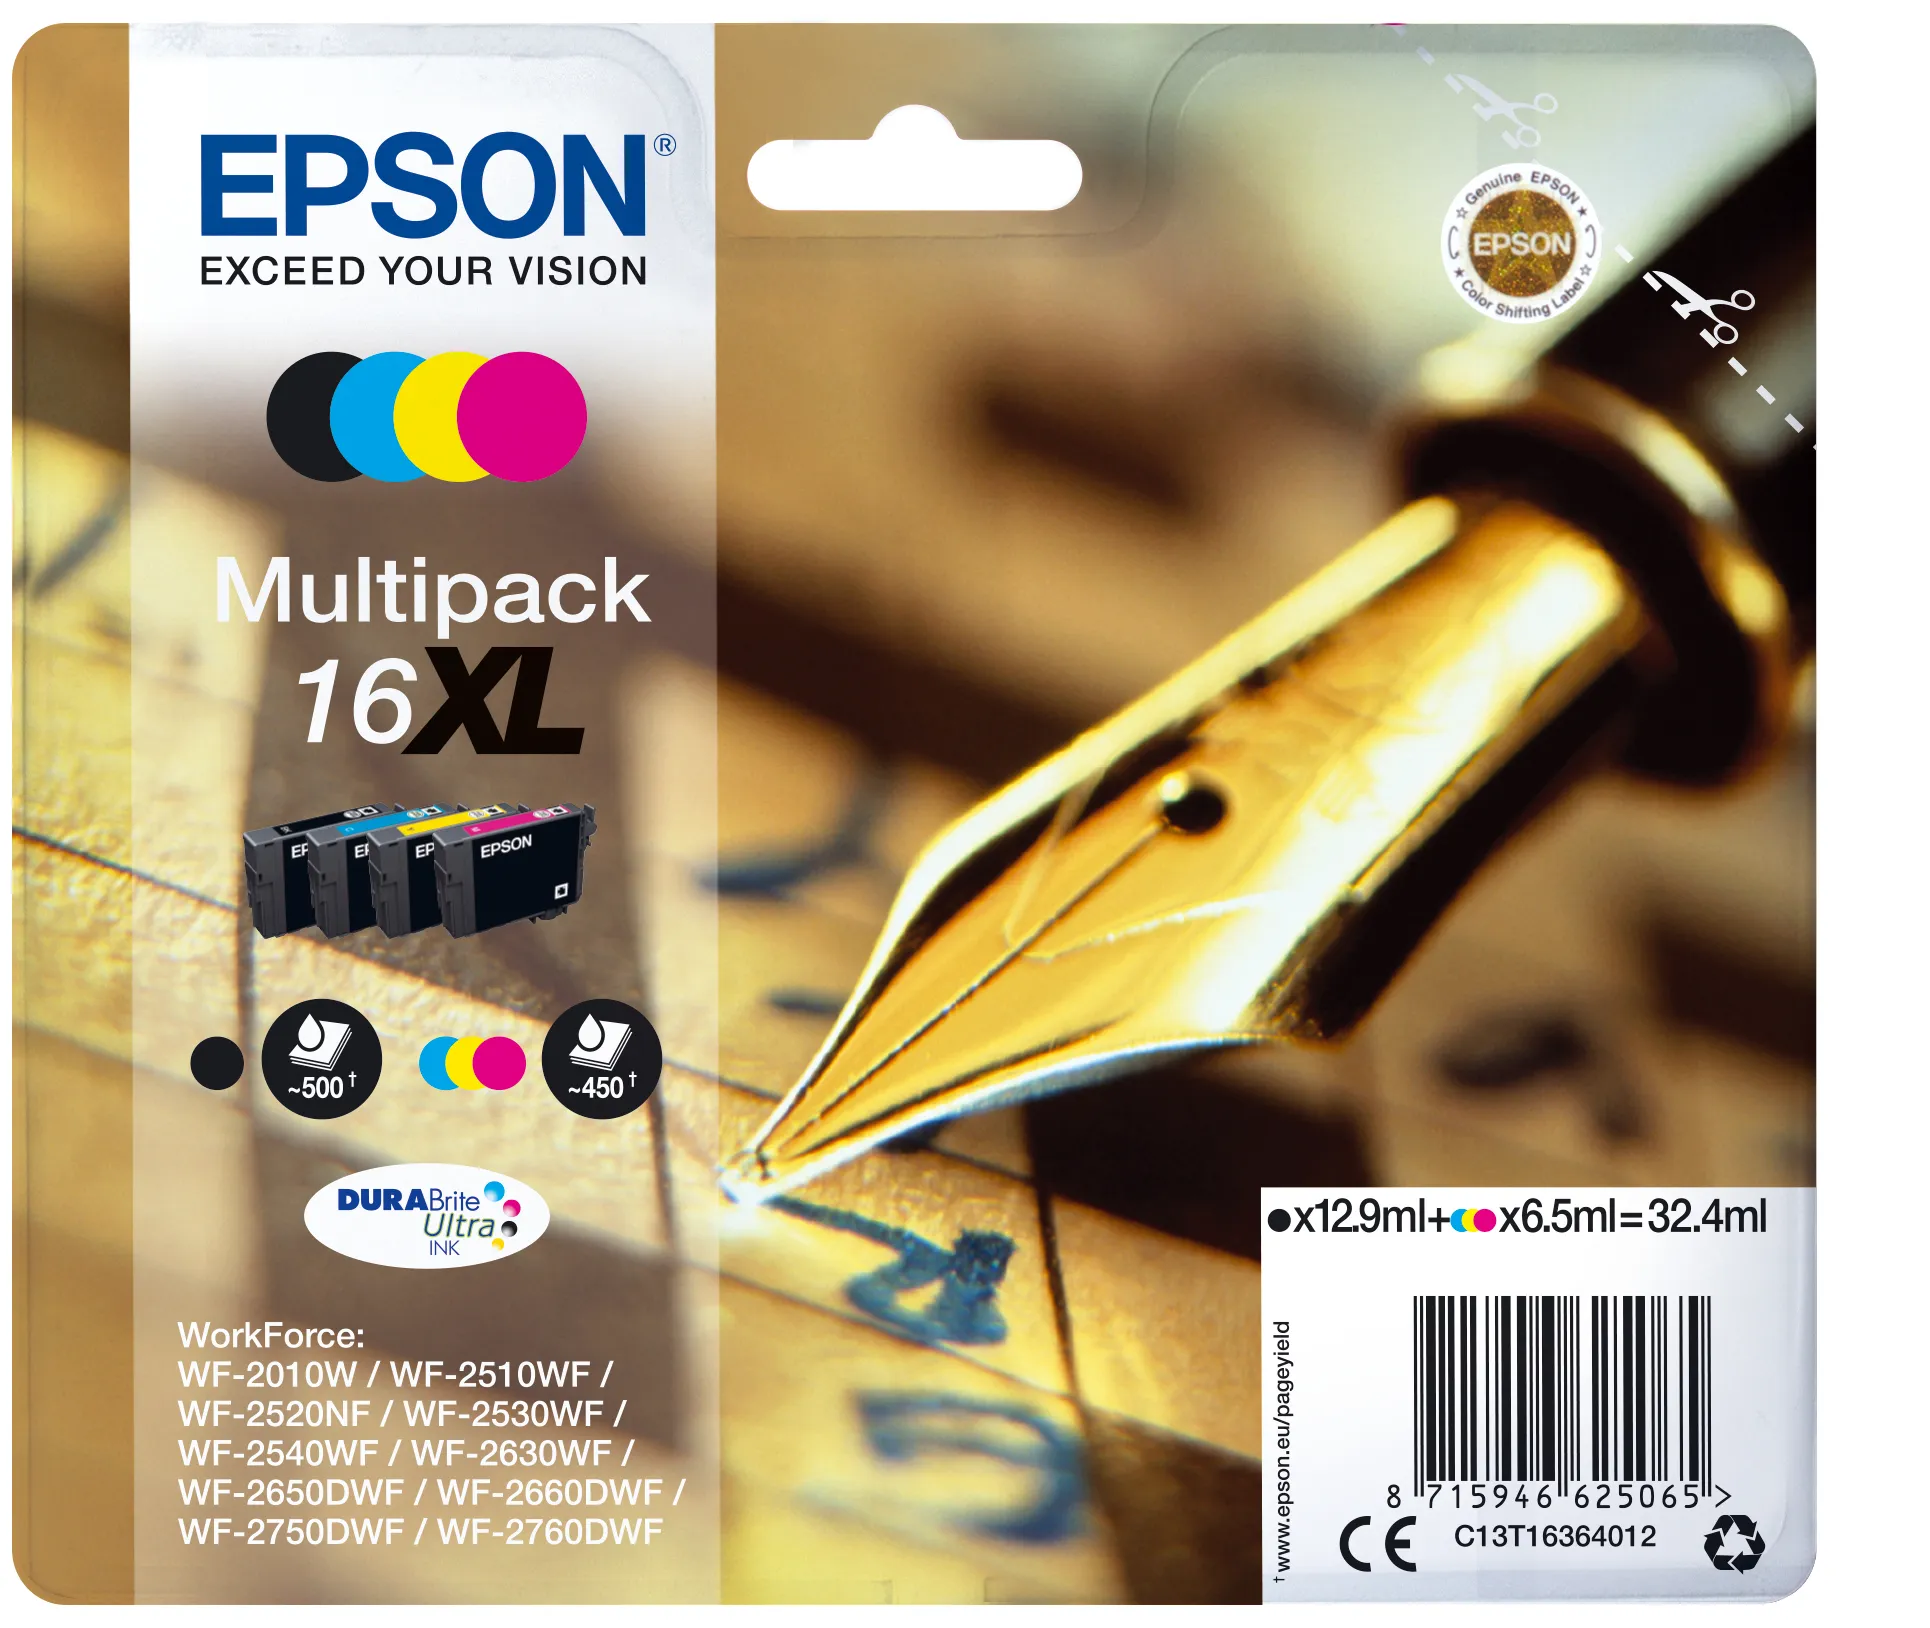 Achat EPSON 16XL cartouche encre noir et tricolore haute sur hello RSE - visuel 3